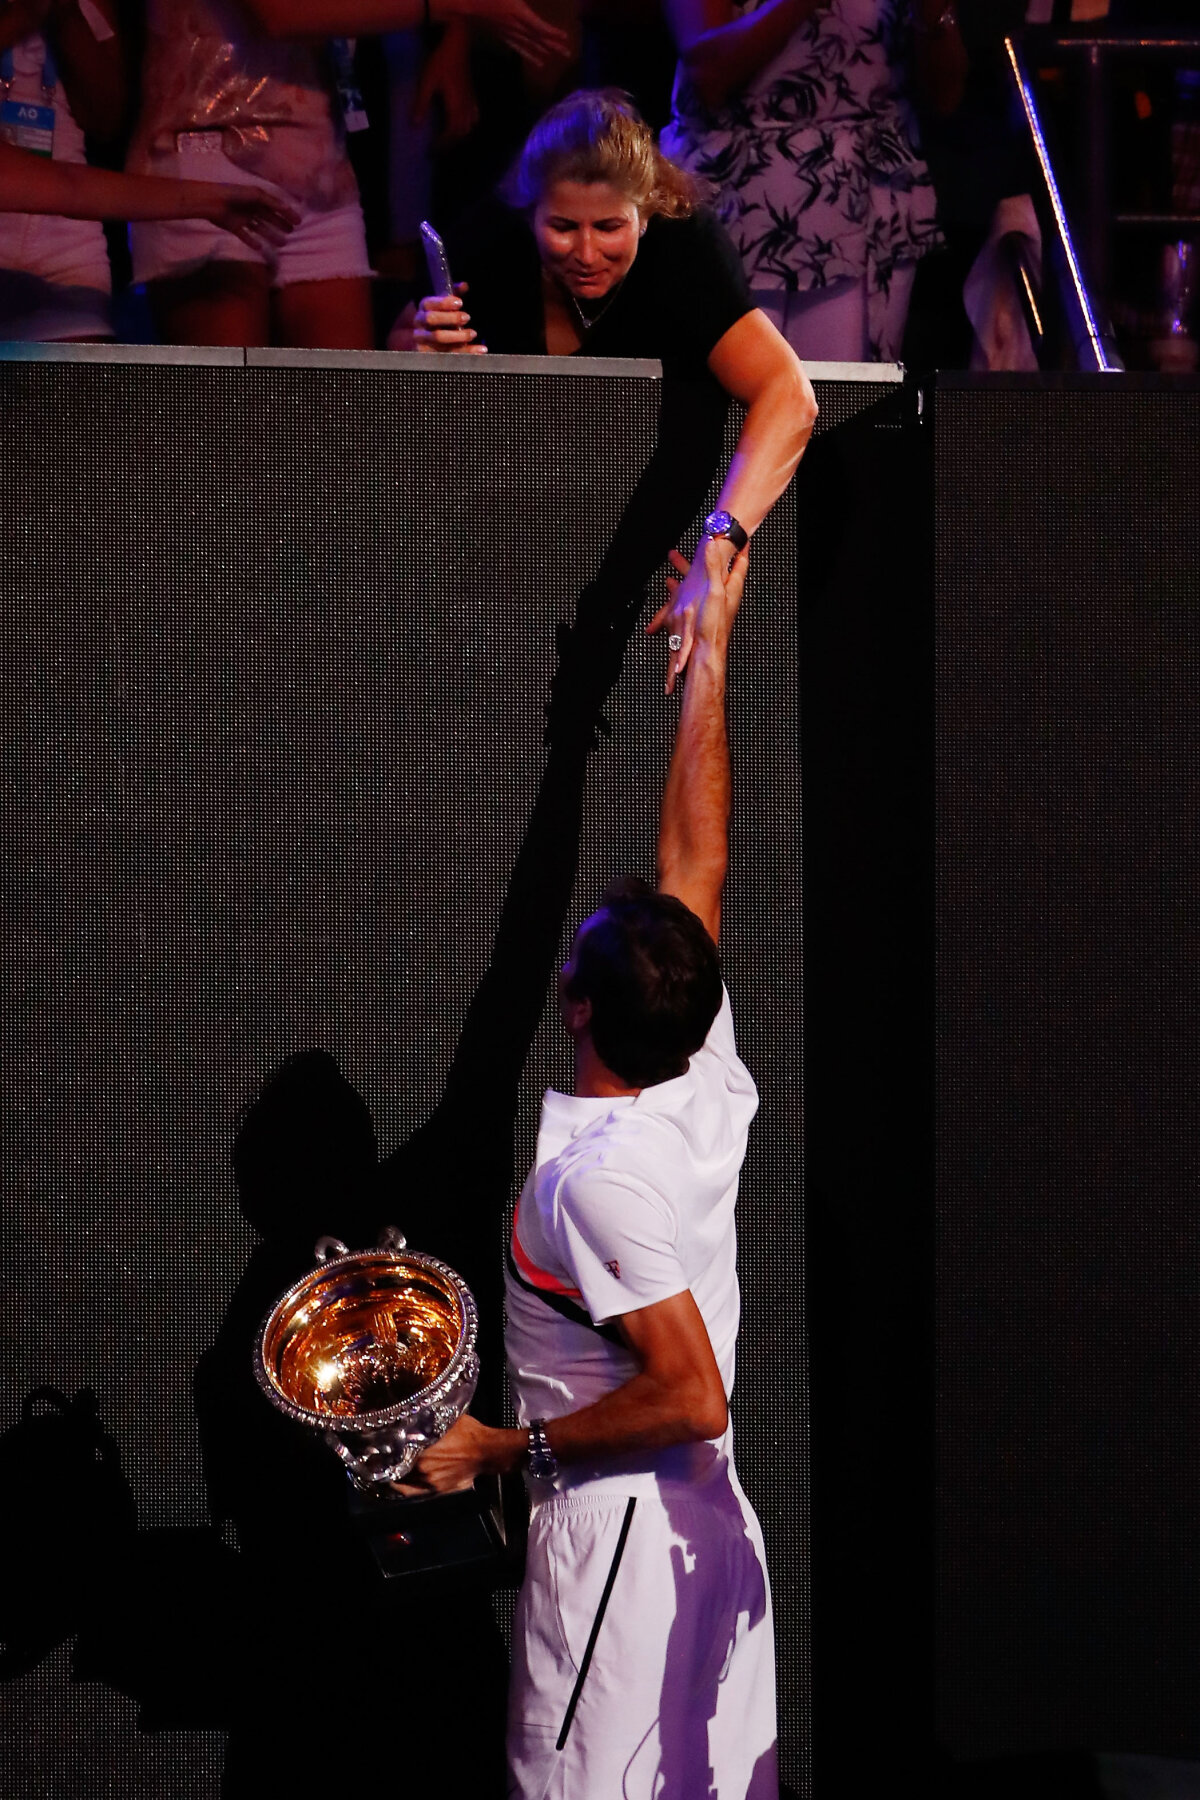 GALERIE FOTO 20GER Federer! » Elvețianul s-a impus în 5 seturi în finala de la Australian Open cu Marin Cilici și a ajuns la 20 de turnee de Mare Șlem câștigate